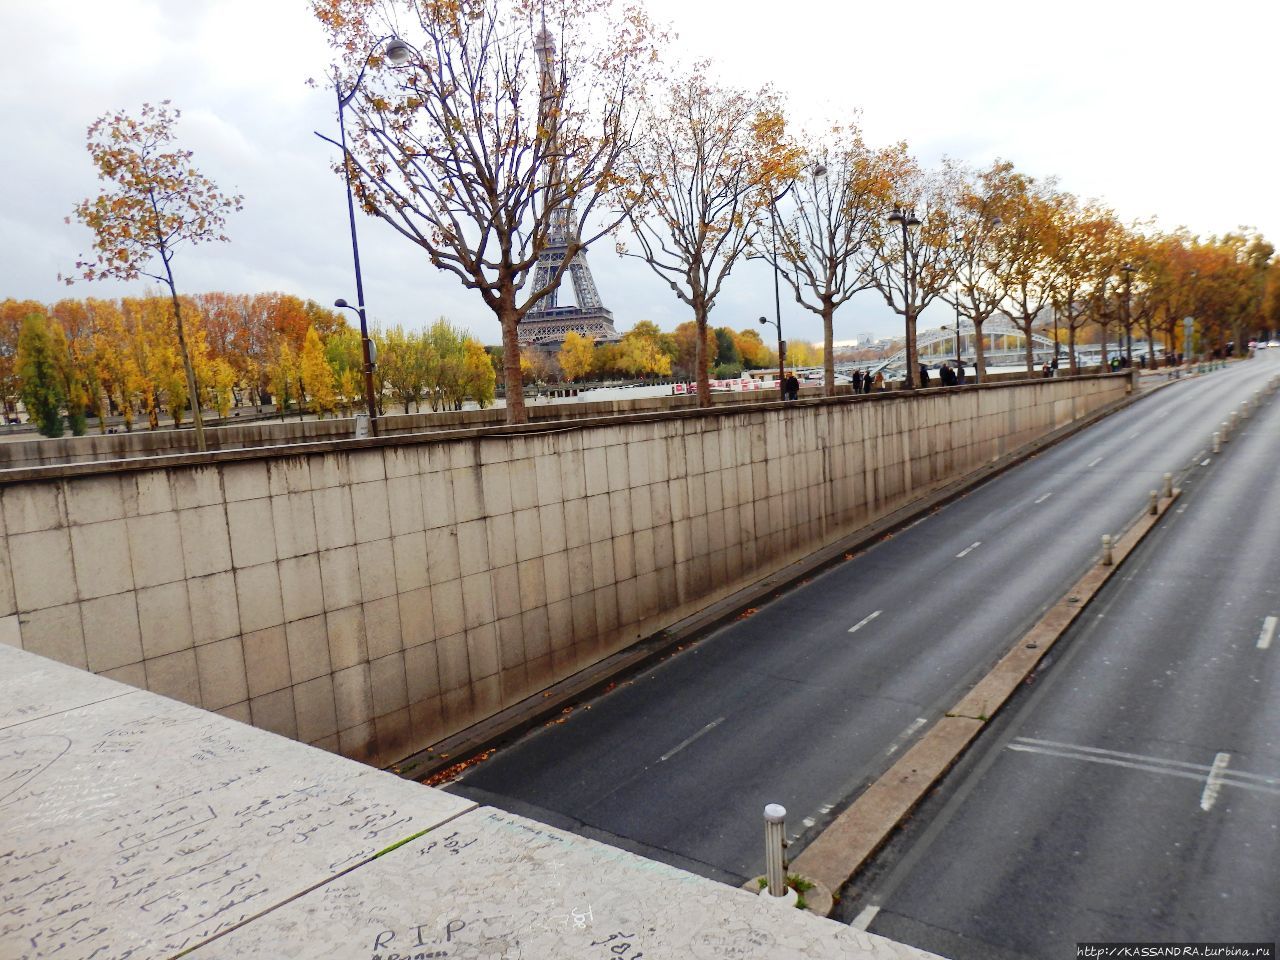 Наводнение в Париже. Дежавю на мосту Альма Париж, Франция